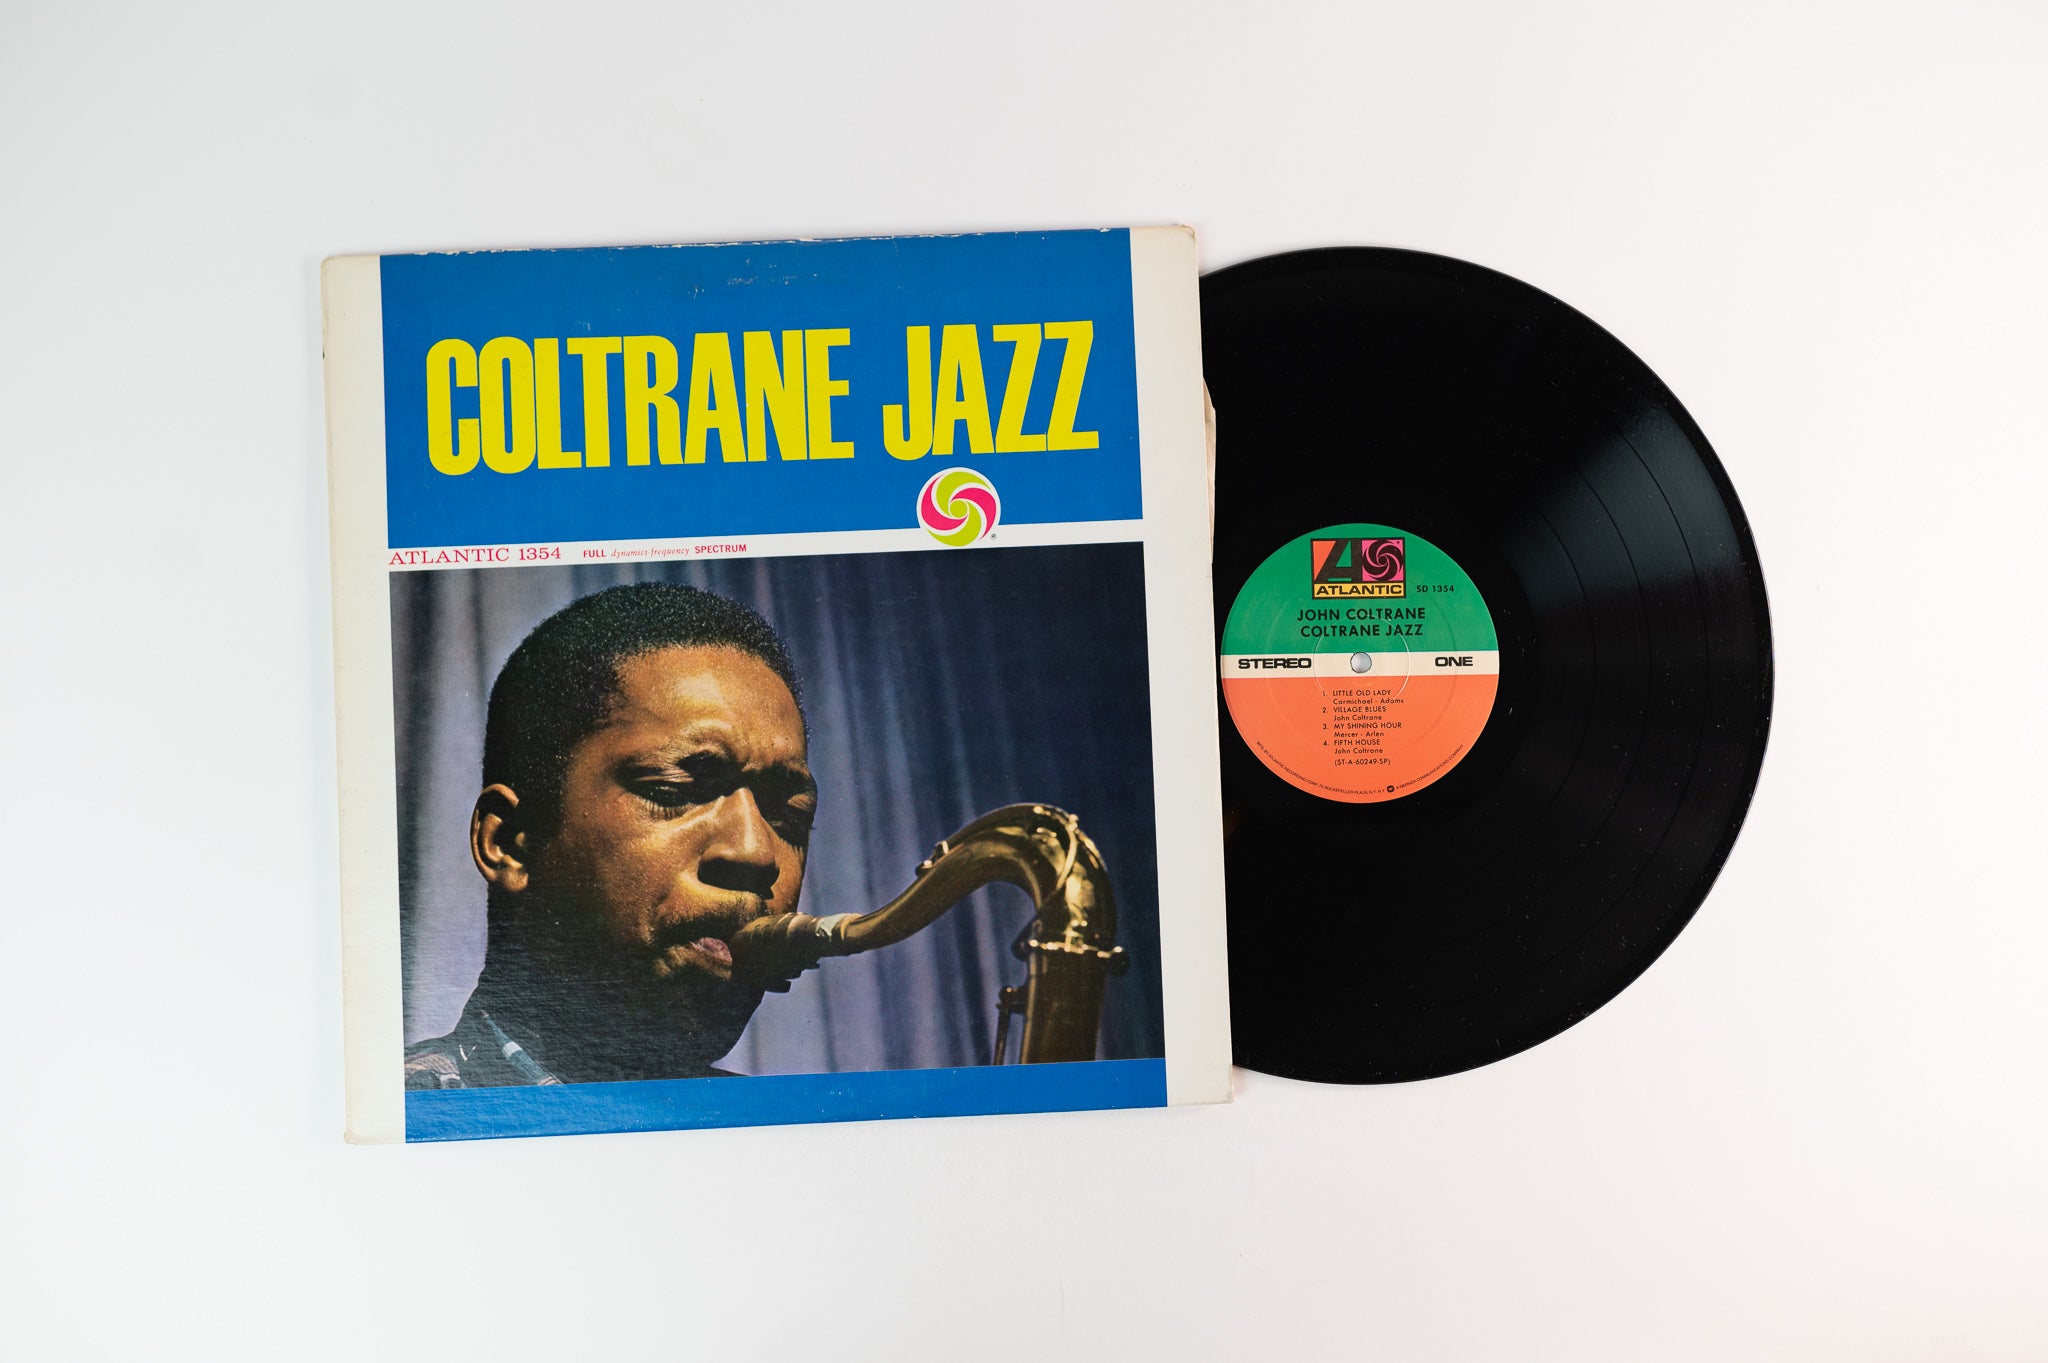 John Coltrane - Coltrane Jazz on Atlantic Reissue